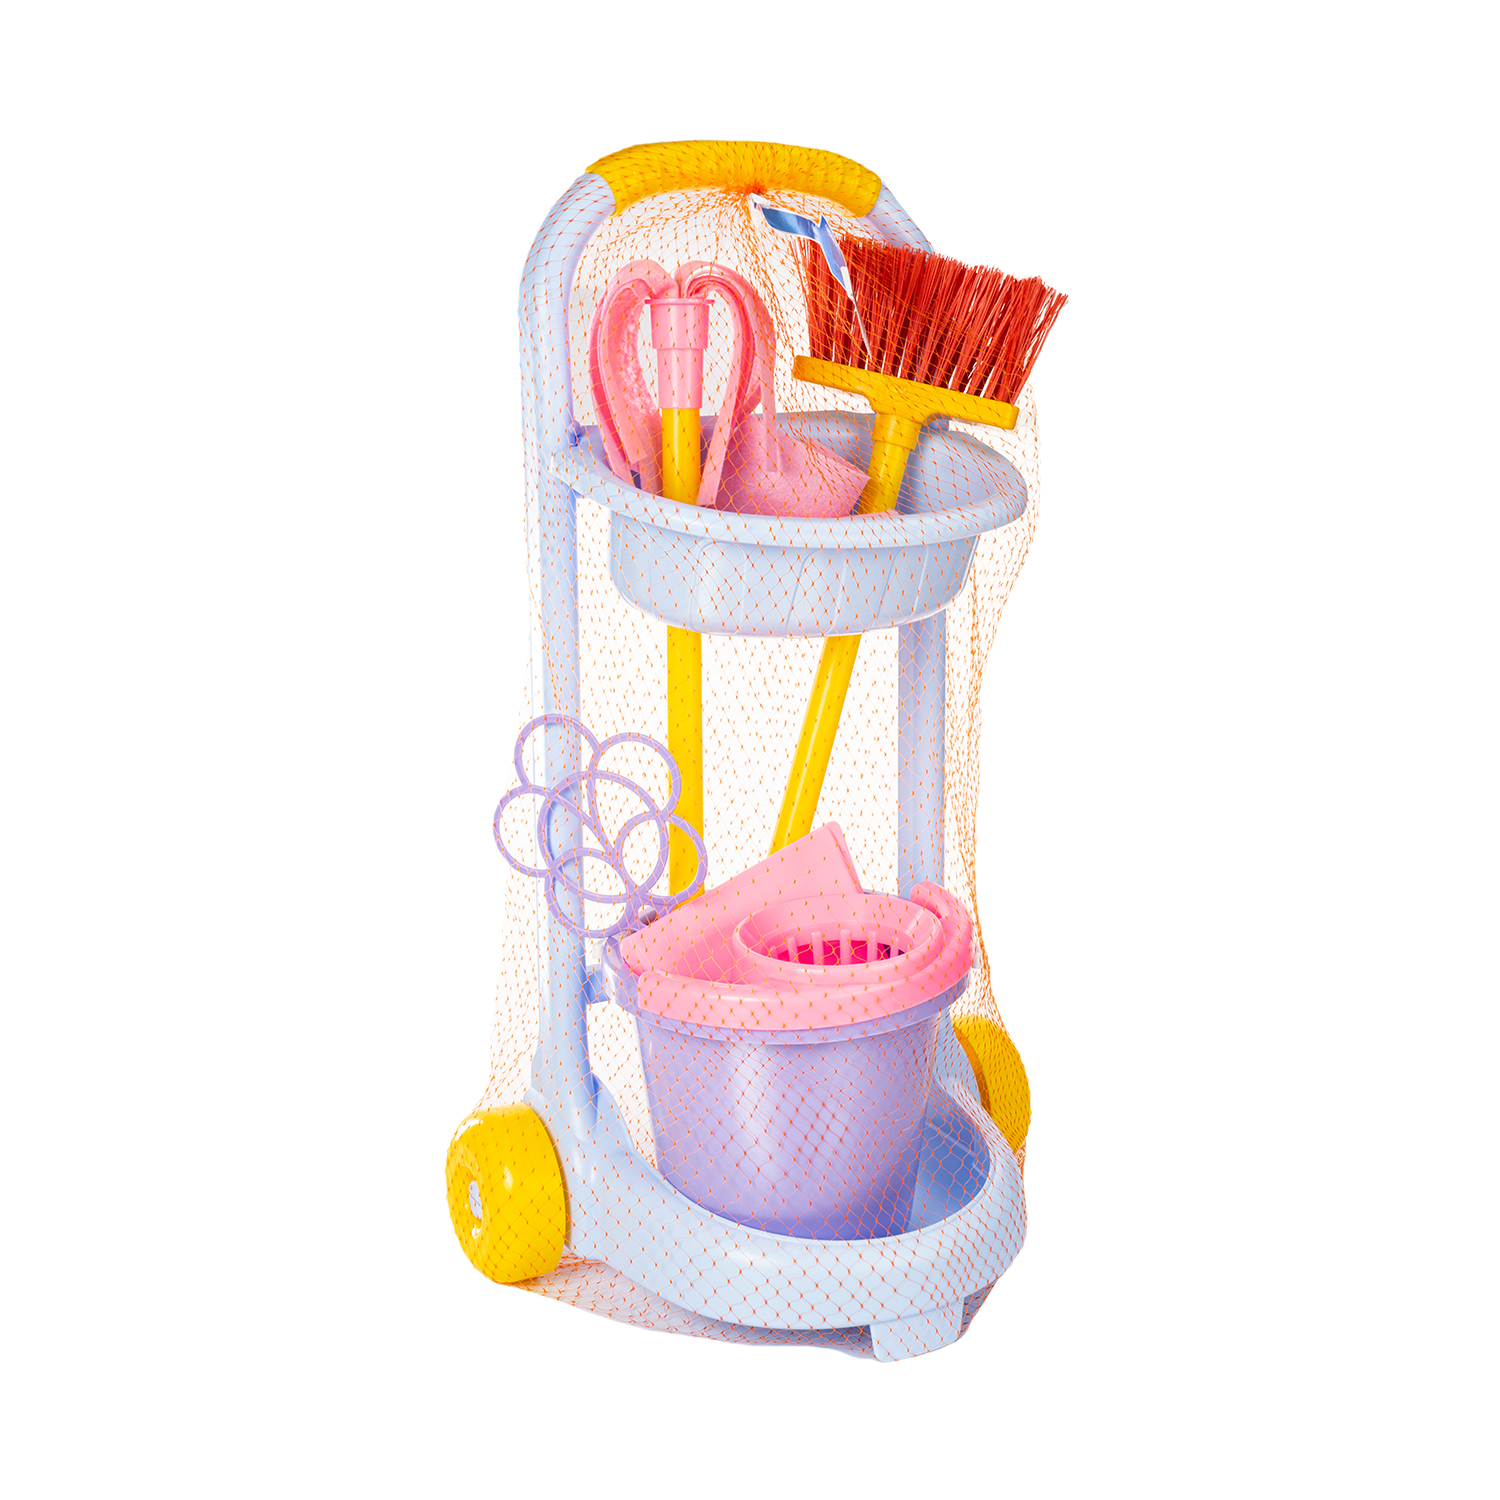 Бытовой игровой набор Стром хозяйственный для детей Золушка инвентарь для уборки Маленькая Хозяйка - фото 7